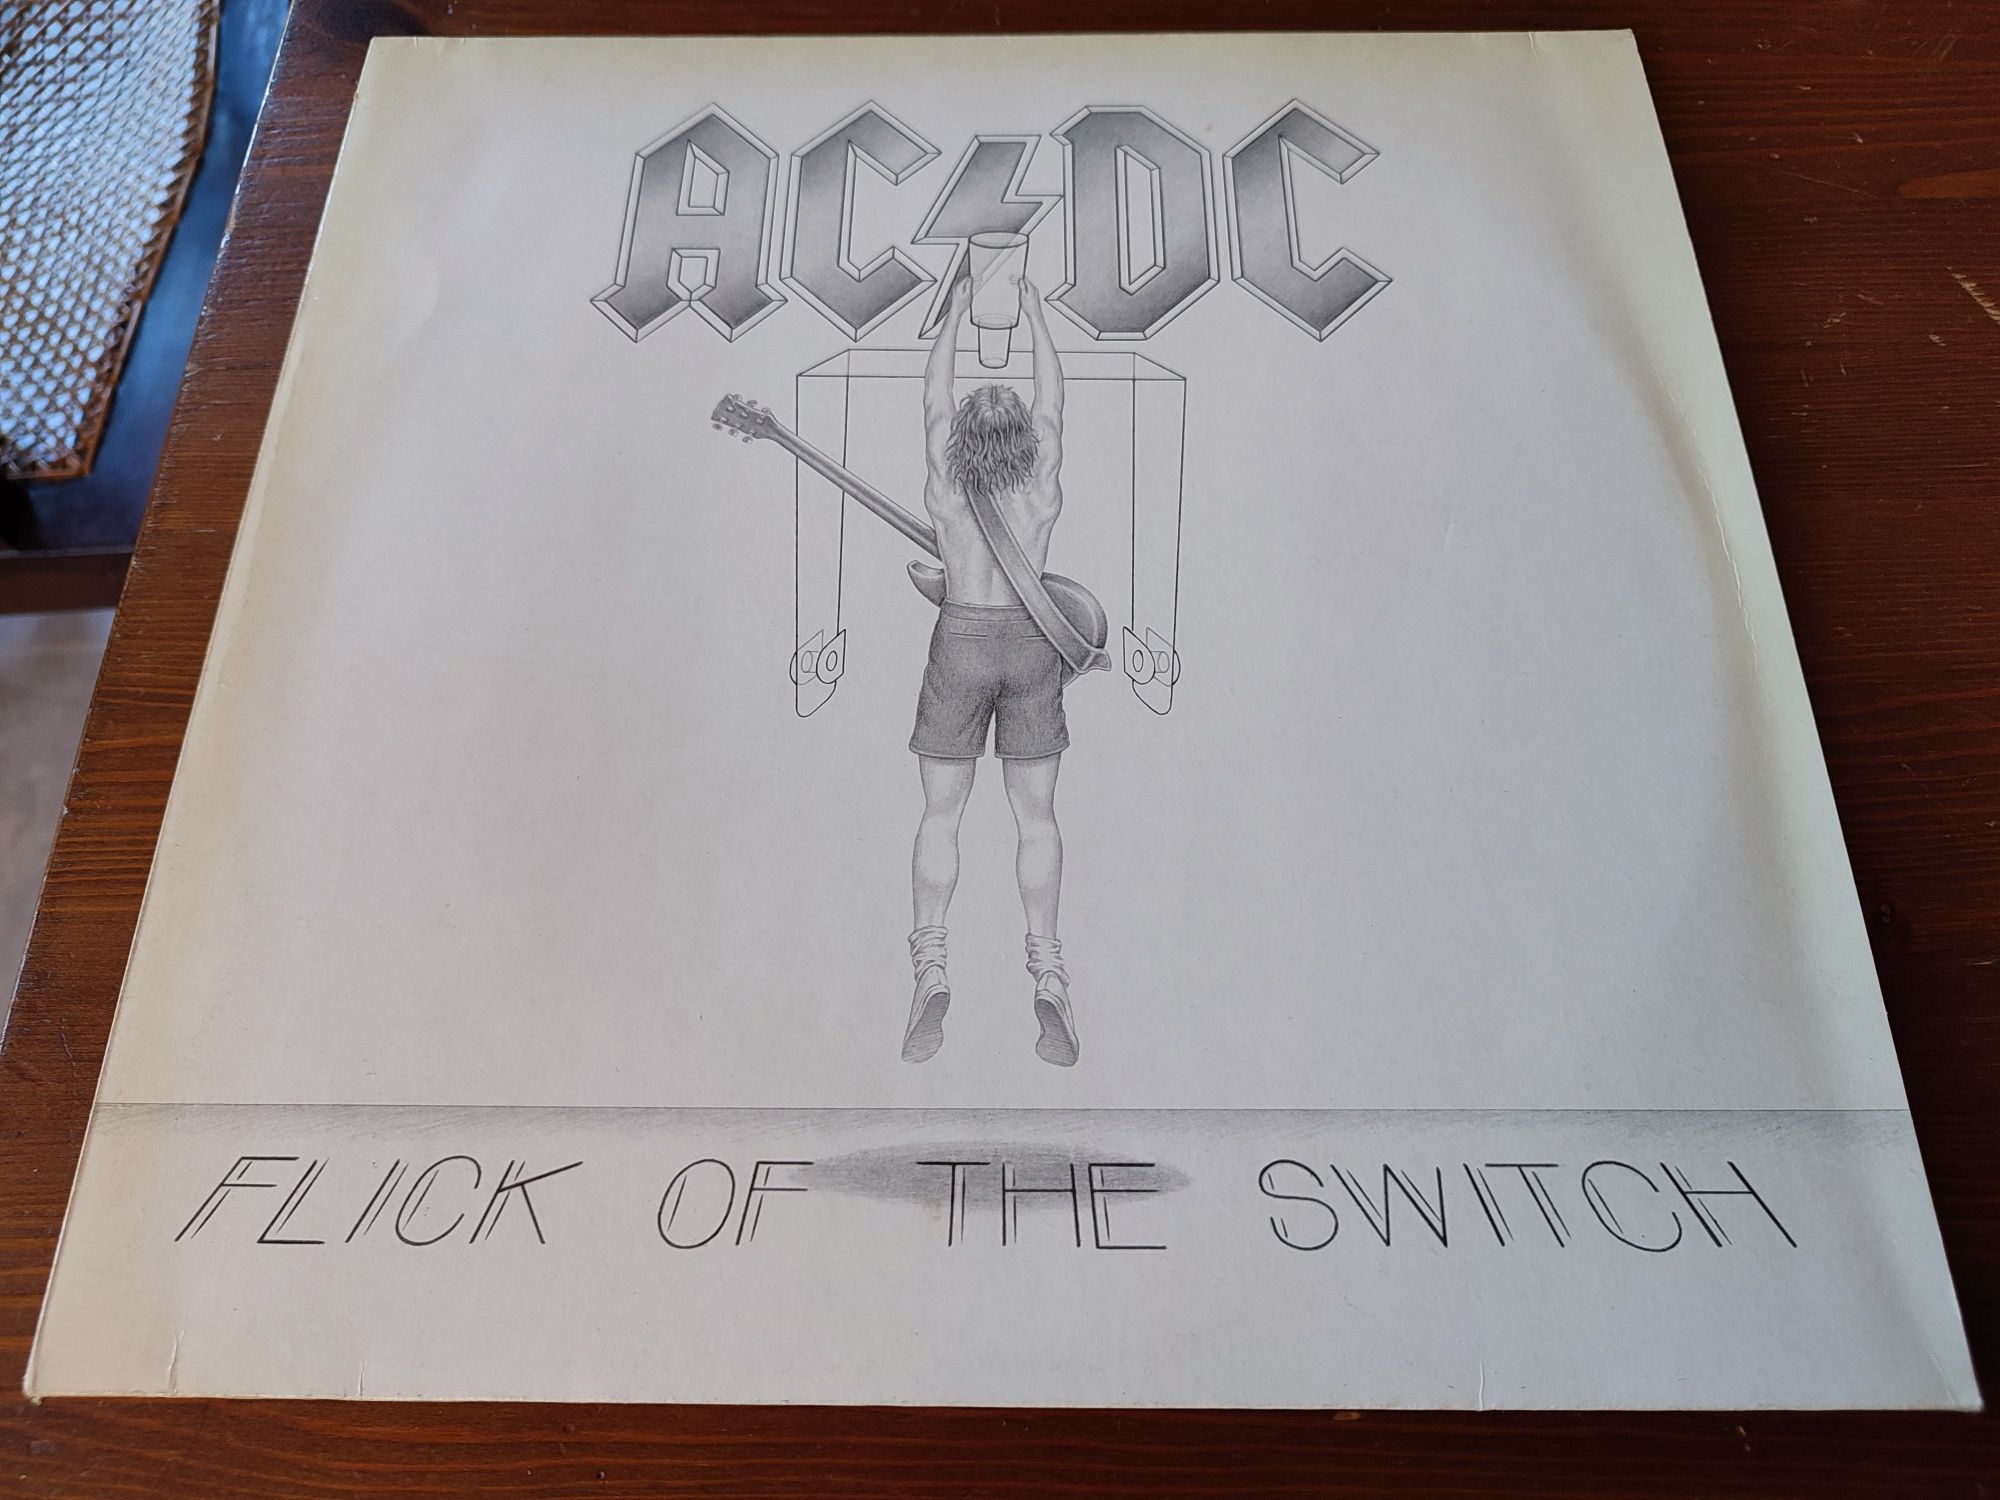 Vinil AC/DC - Flick Of The Switch Álbum Anos 80 Impecável!